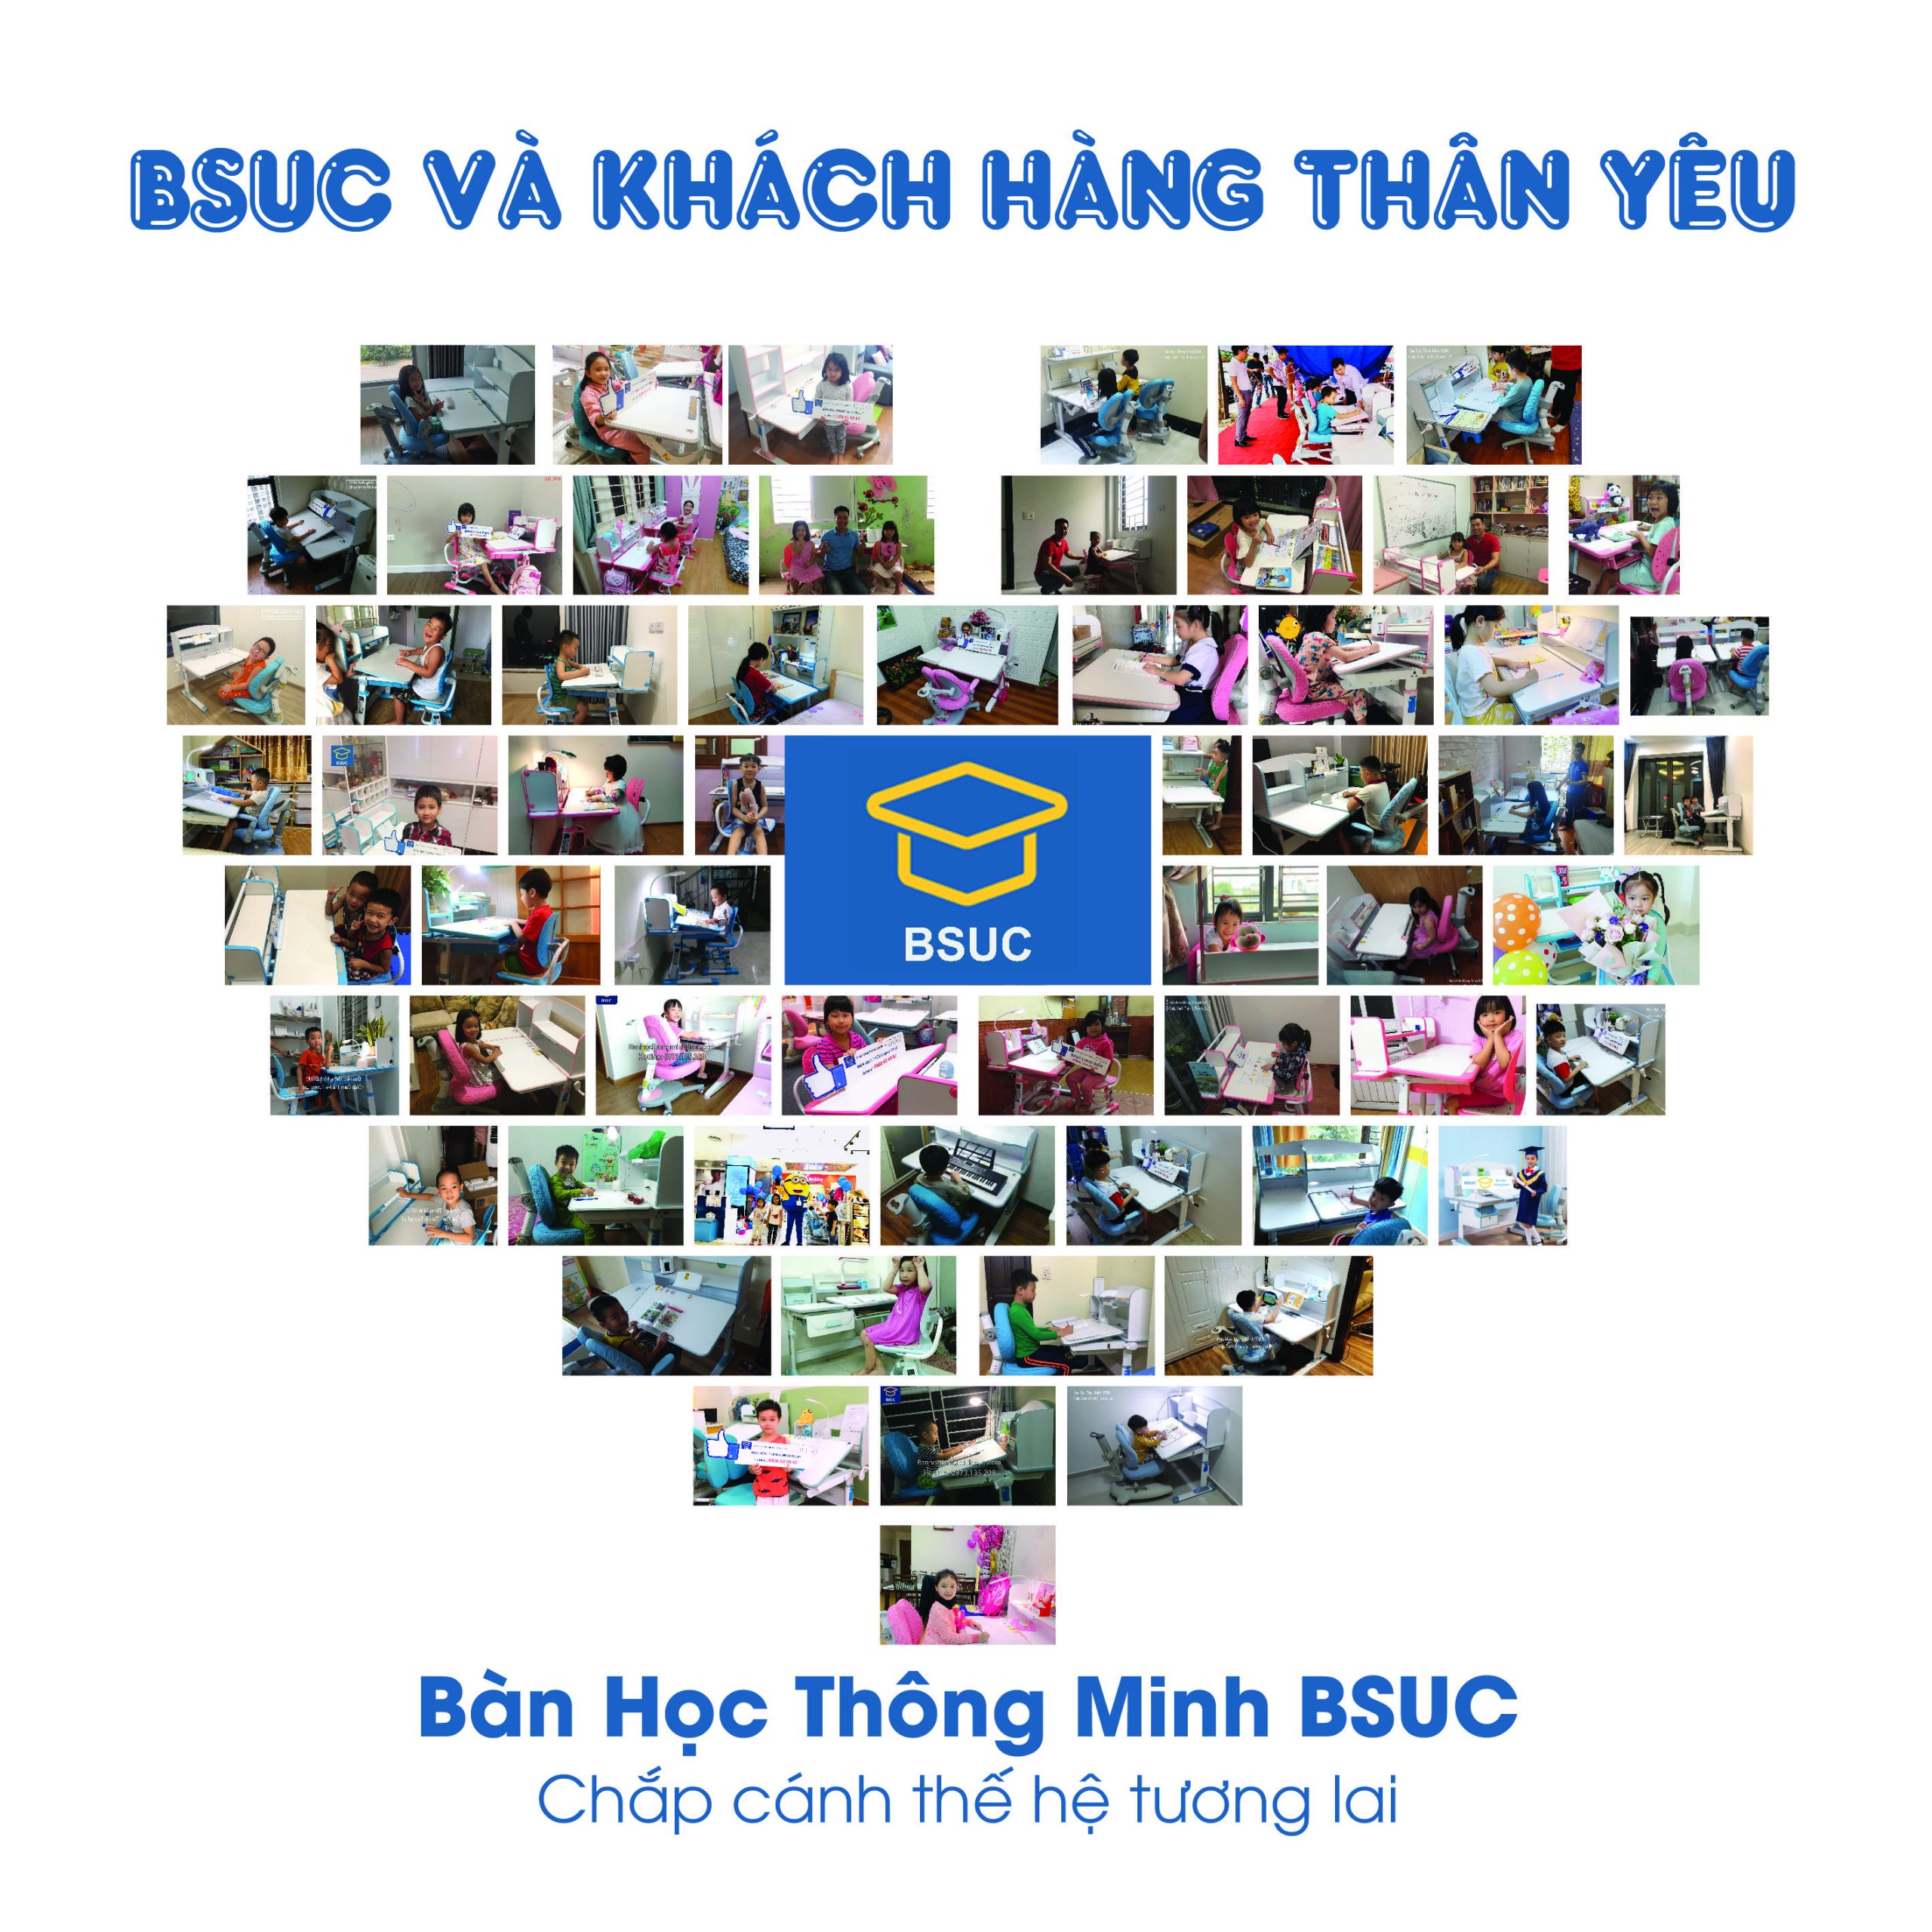 Hàng nghìn trẻ em Việt Nam đã sử dụng nội thất BSUC và được hưởng lợi rất nhiều từ nó.